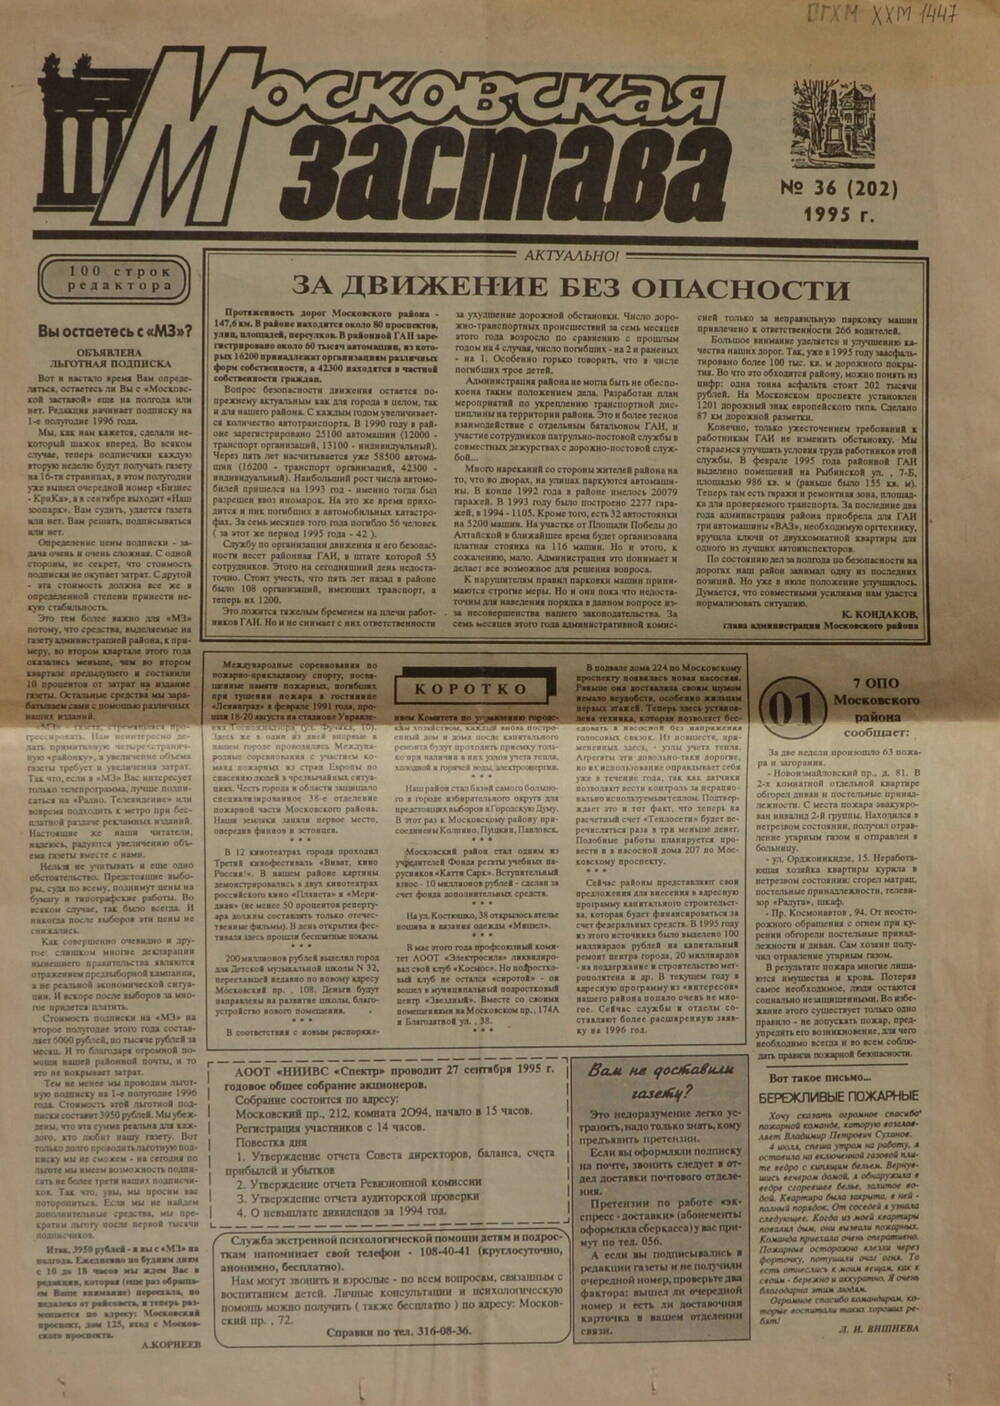 Газета «Московская застава» №36 за 1995 г со статьёй  Н. Скуляри «Искусство мудрое, чистое, высокое».